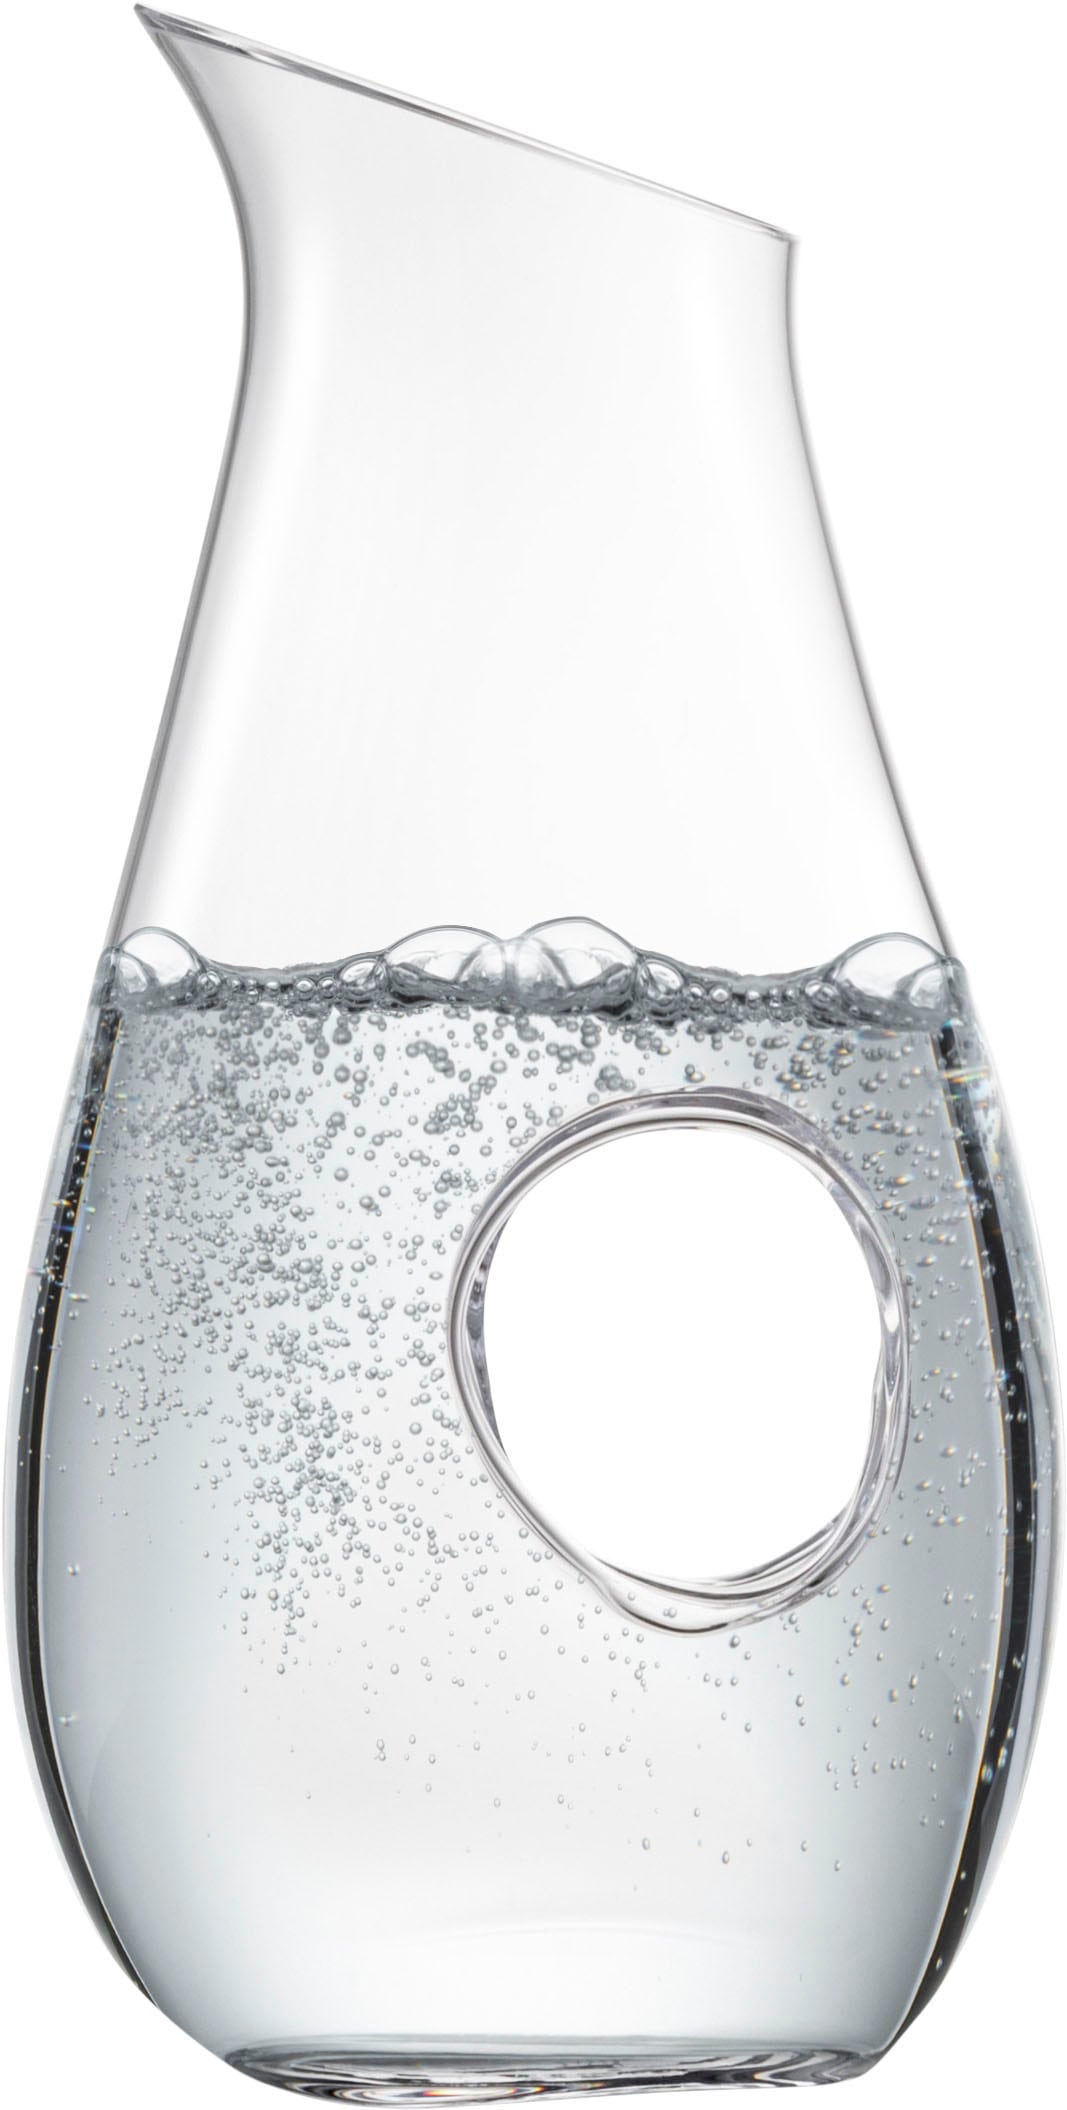 Eisch Wasserkrug »706/1.5 ND, Kristallglas«, mit Durchgriff, NO DROP EFFEKT für tropffreies Ausgießen, 1 Liter